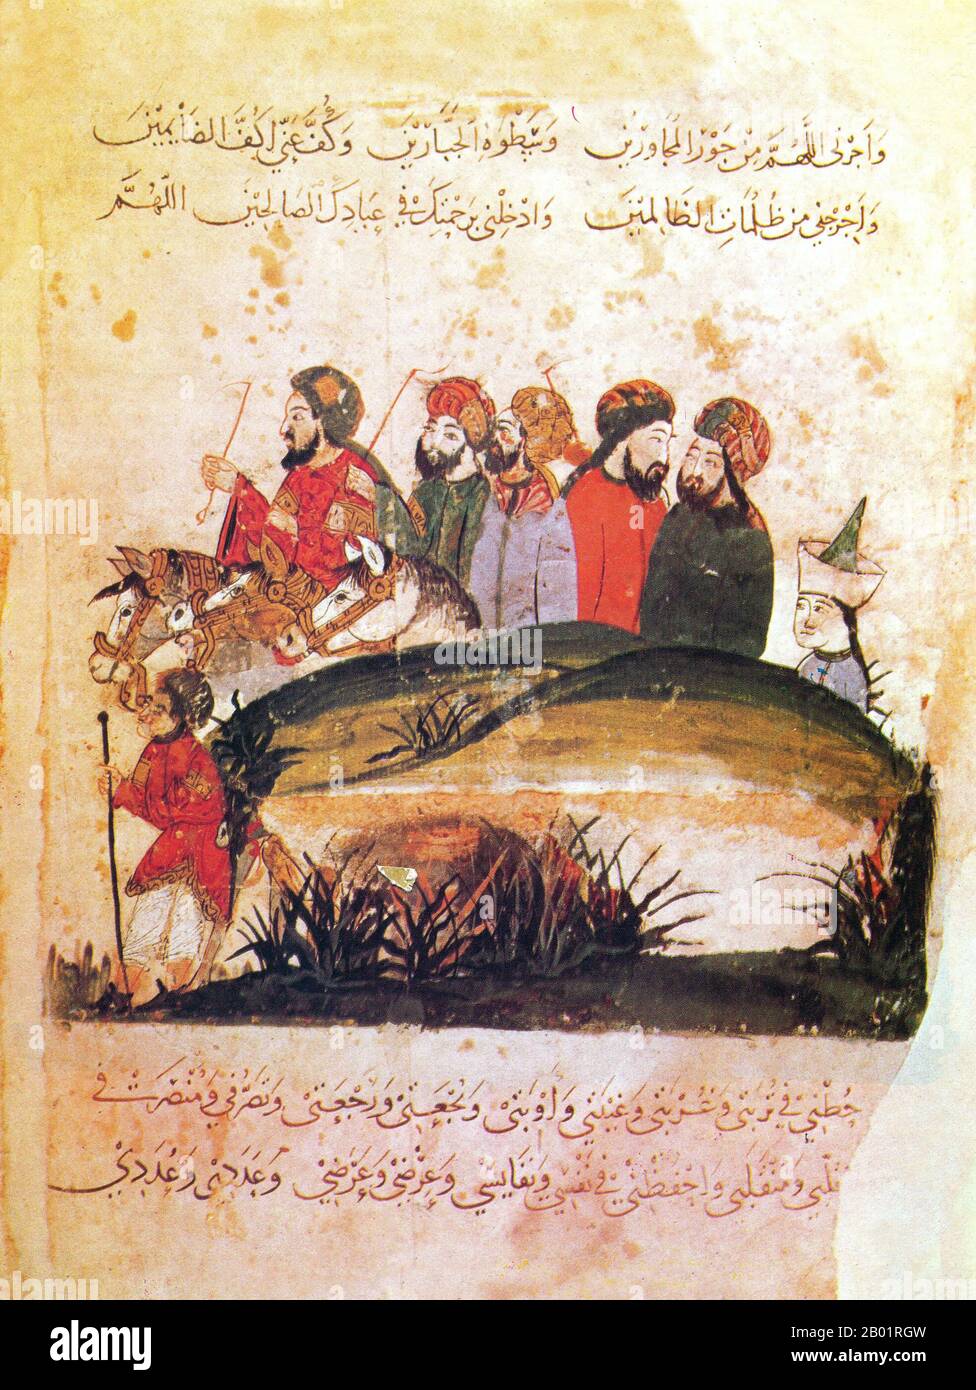 Iraq: Viaggiatori a cavallo e a piedi. Pittura in miniatura di Yahya ibn Mahmud al-Wasiti, 1237 d.C. Yahyâ ibn Mahmûd al-Wâsitî è stato un artista arabo islamico del XIII secolo. Al-Wasiti è nato a Wasit, nel sud dell'Iraq. Era noto per le sue illustrazioni del Maqam di al-Hariri. I Maqāma (letteralmente "assemblee") sono un genere letterario arabo (originariamente) di prosa rimata con intervalli di poesia in cui la stravaganza retorica è evidente. Si dice che l'autore del X secolo Badī' al-Zaman al-Hamadhāni abbia inventato la forma, che fu estesa da al-Hariri di Bassora nel secolo successivo. Foto Stock